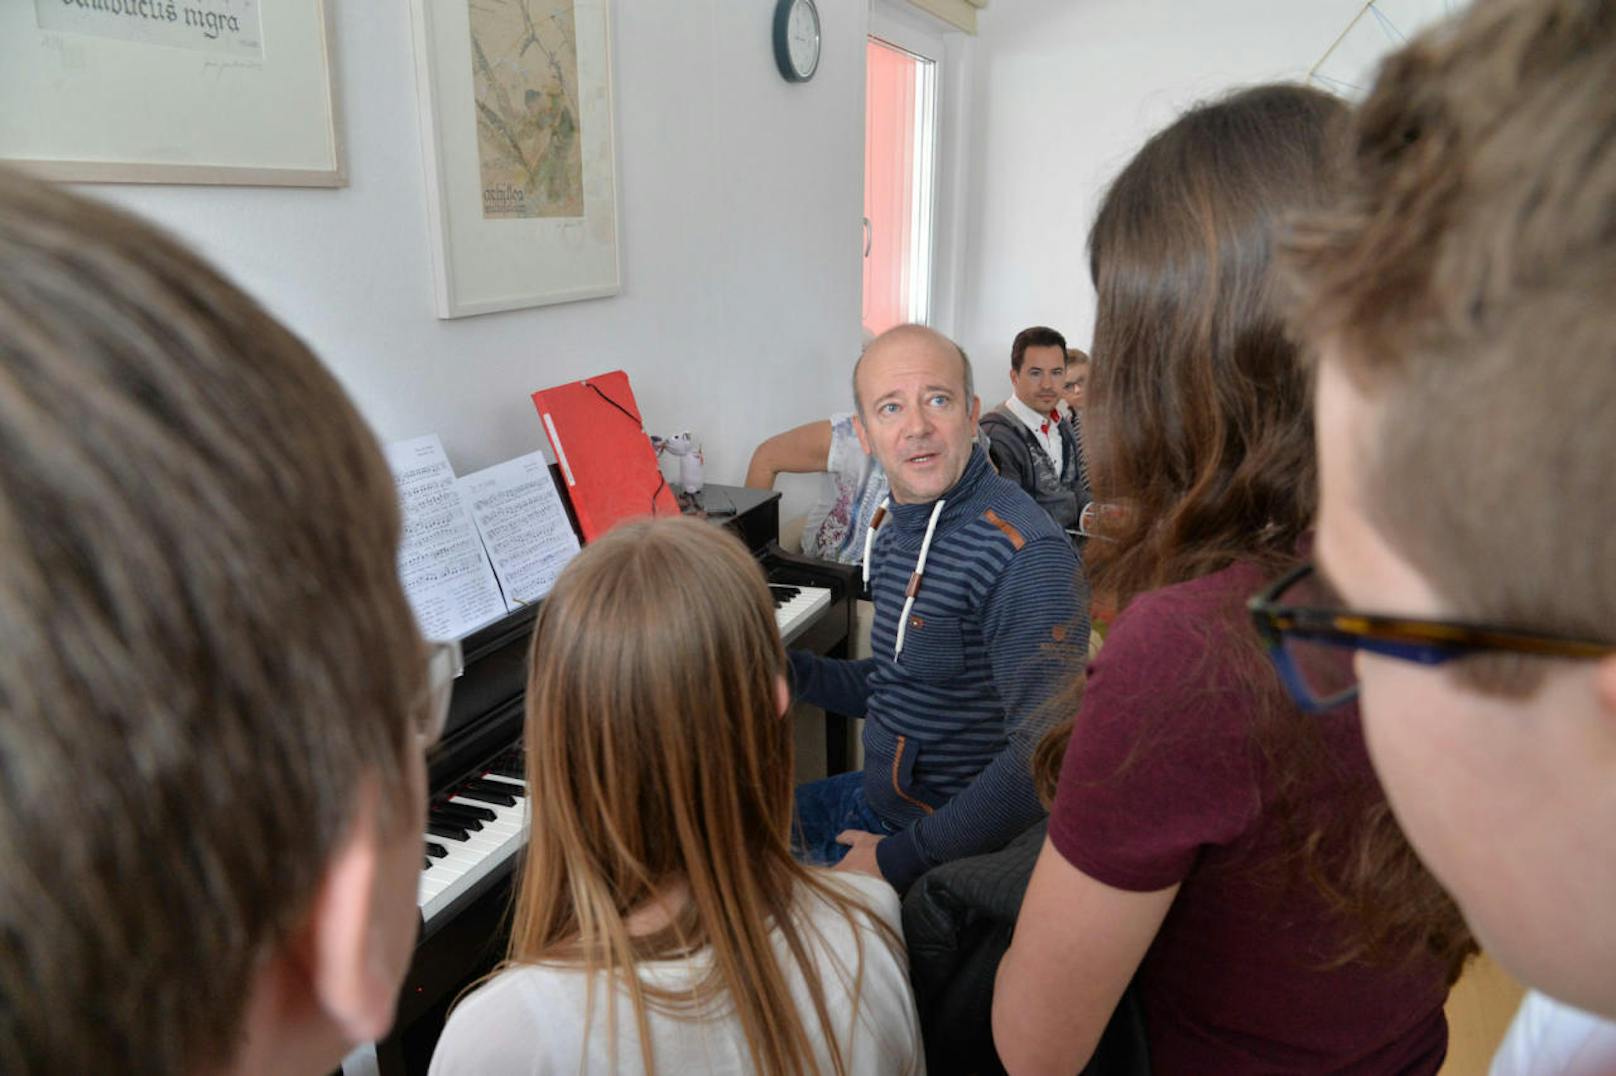 Rock'n'Roll-Legende Andy Lee Lang spielt im Kinderheim für die Kids am Klavier